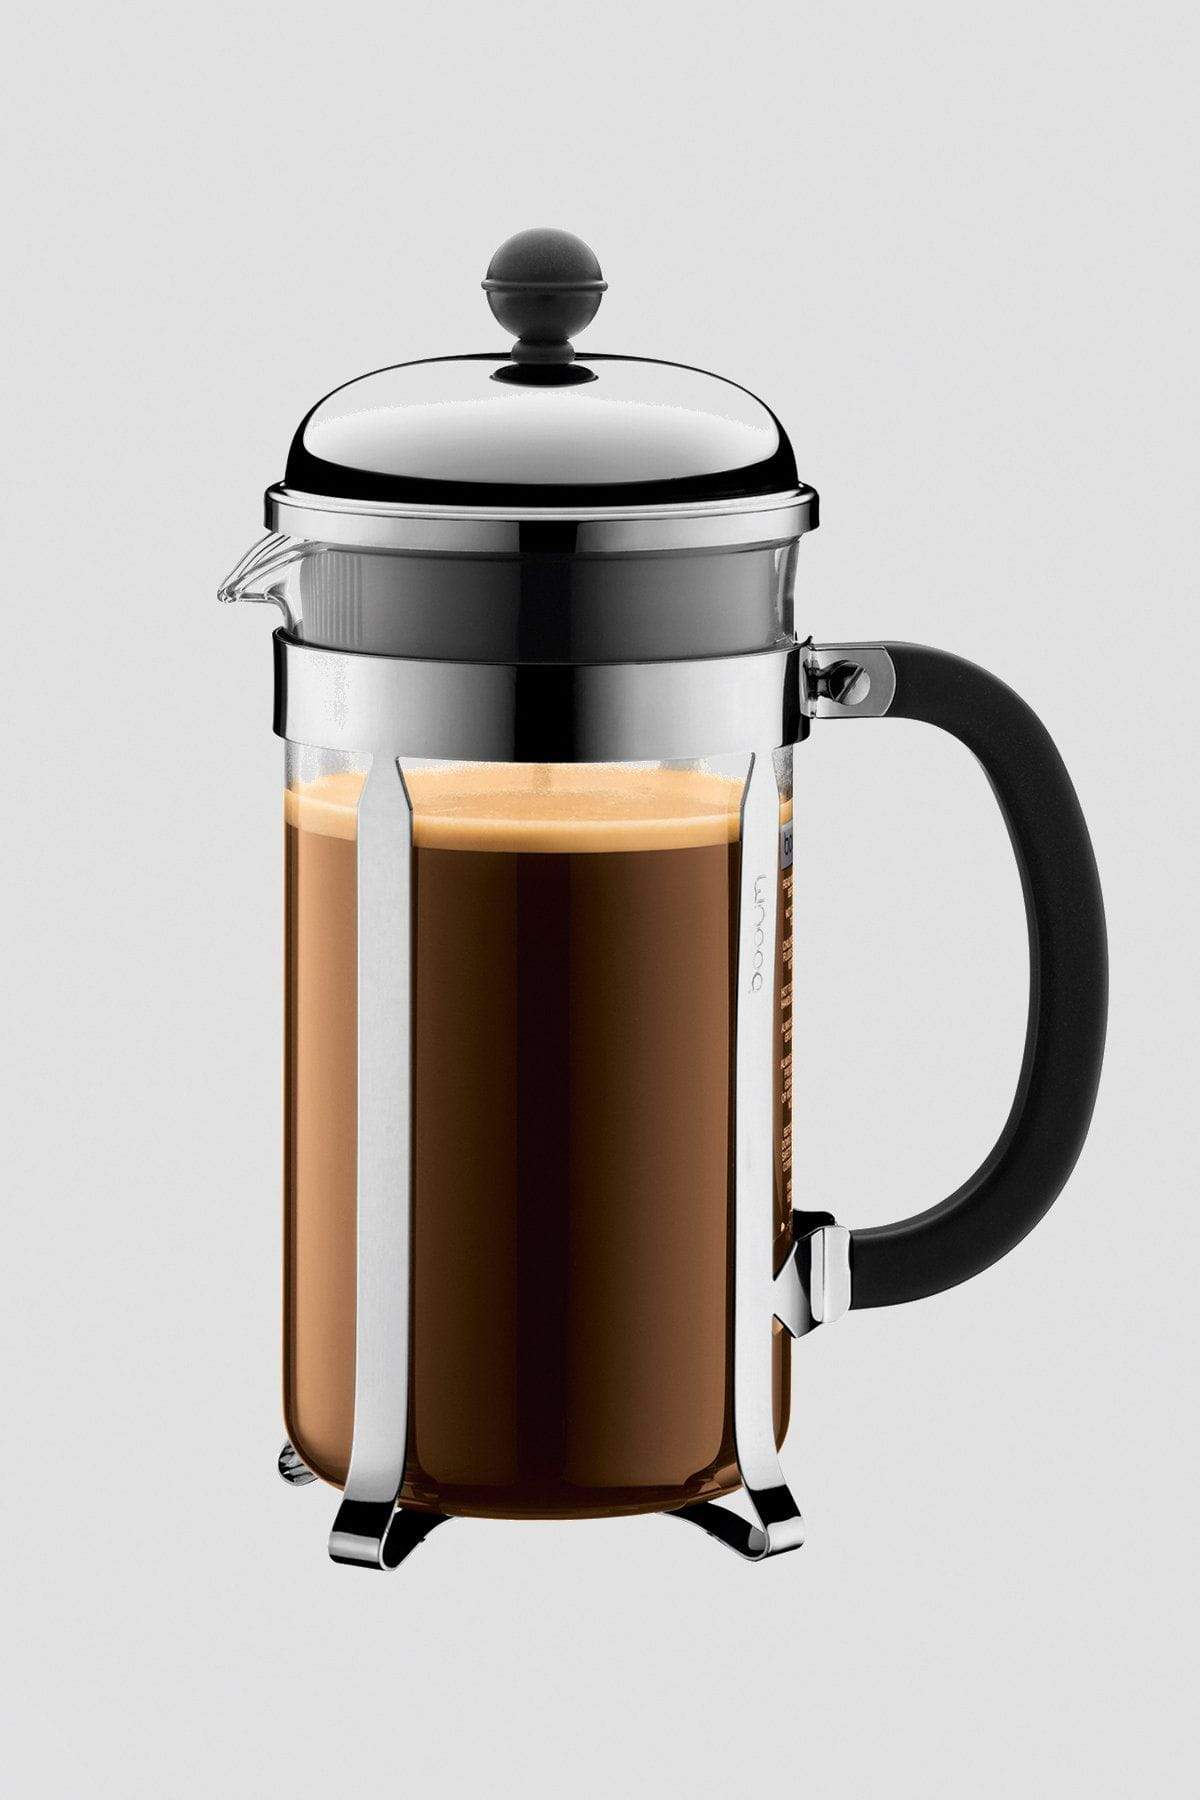 Carraig Donn Chambord Coffee Maker 8 Cup